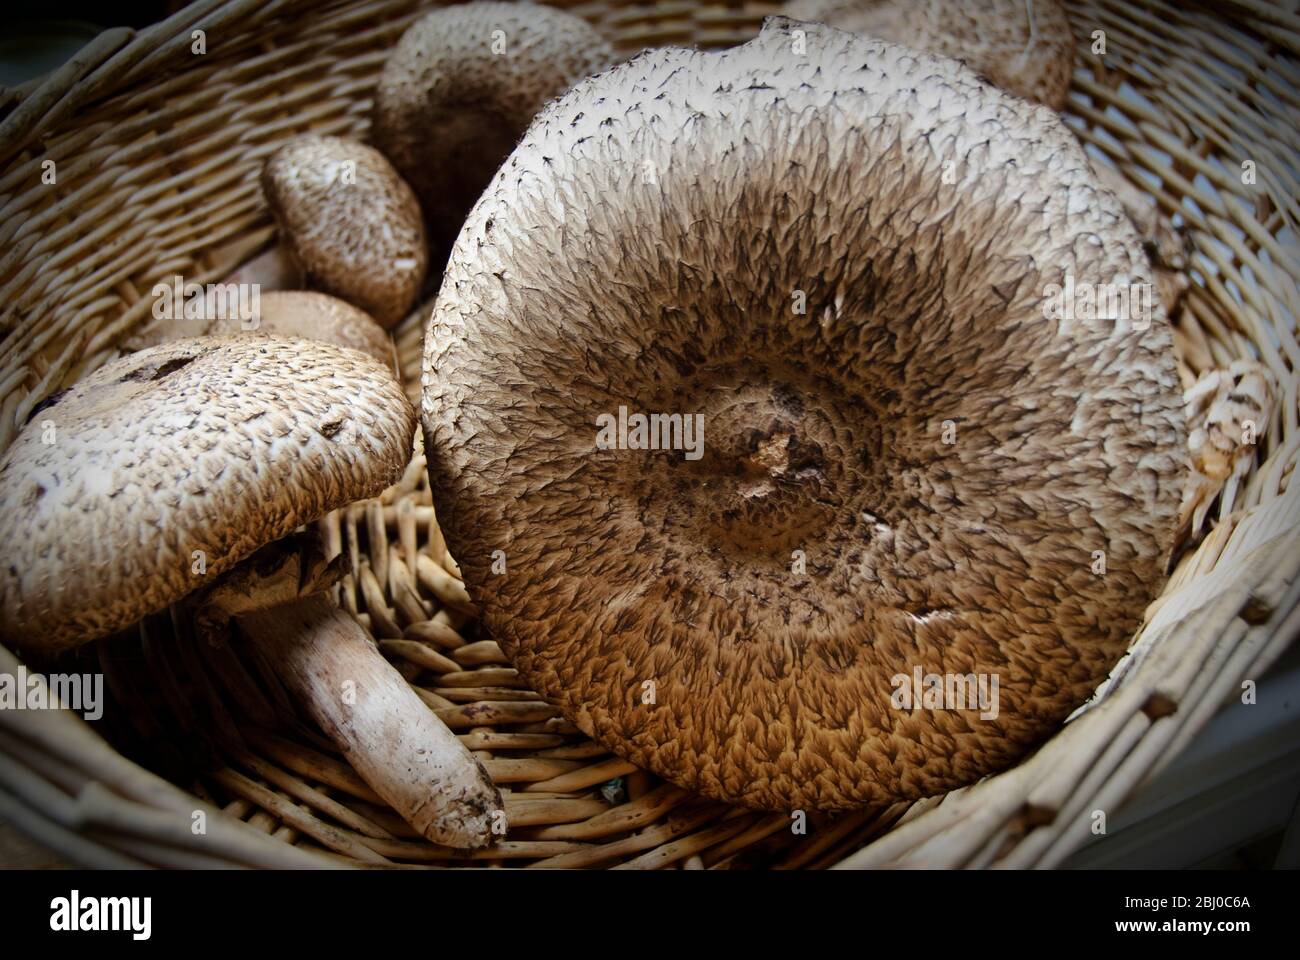 Agaricus augustus, di recente raccolta, conosciuto anche come "il Principe", un fungo del genere Agaricus in un cesto di vimini. - Foto Stock